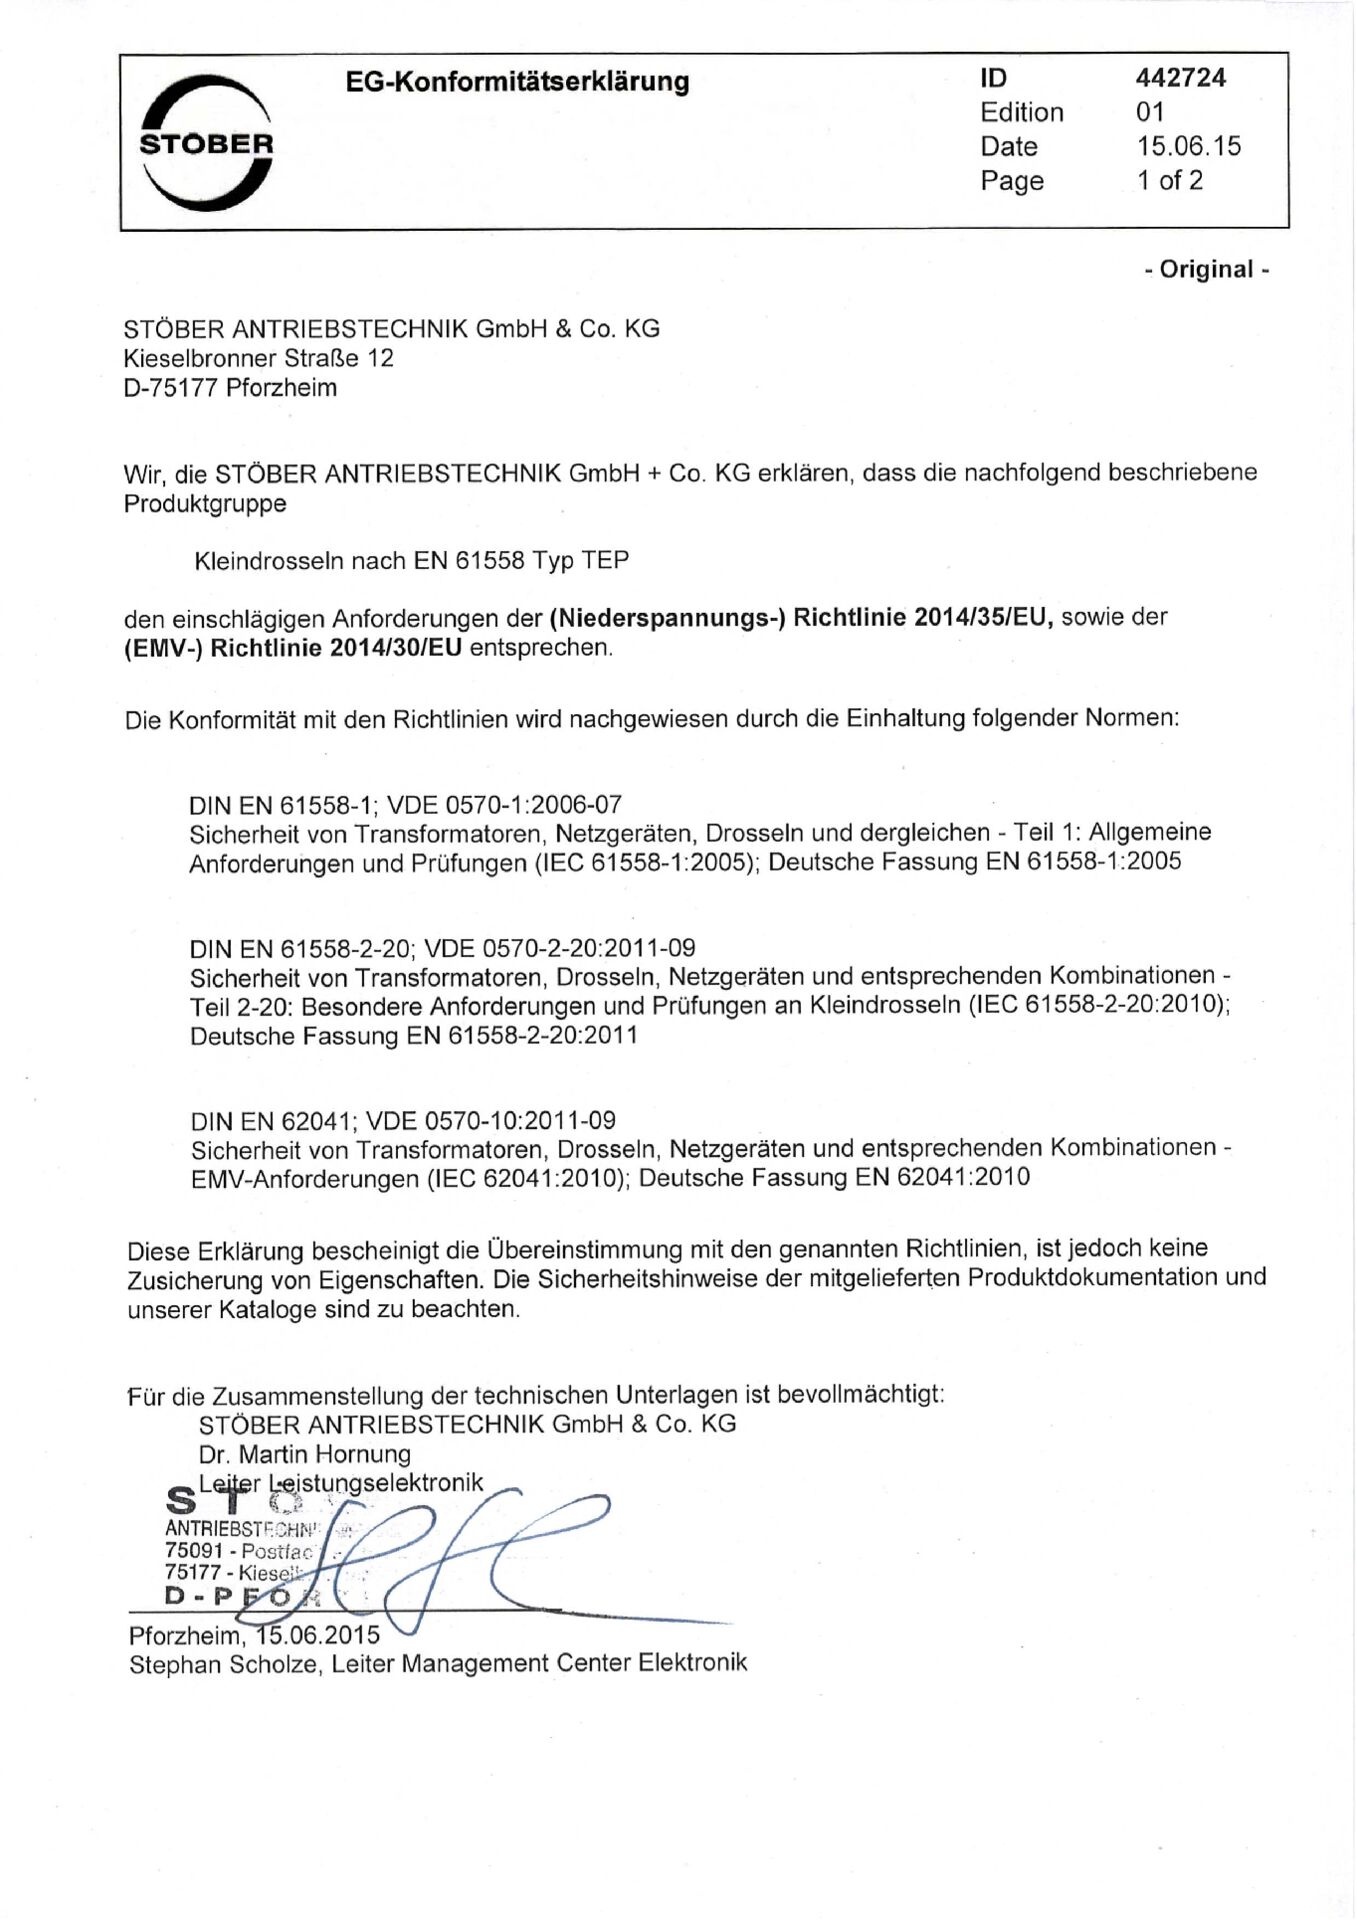 EG-Konformitätserklärung für Kleindrosseln nach EN 61558 TEP